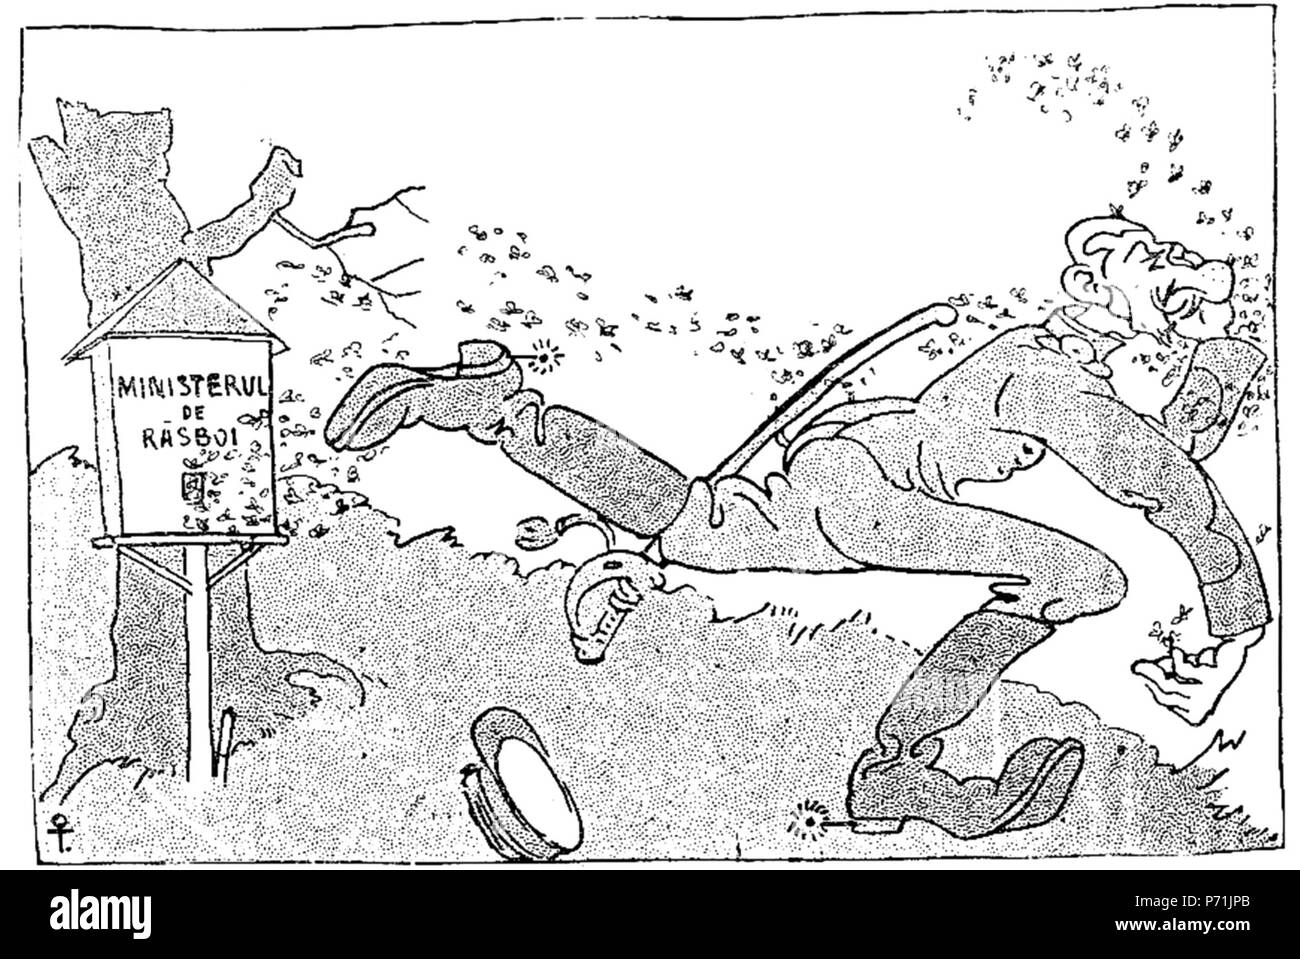 Englisch: Regrete postume ('Posthume bedauert"), politische Karikatur in der Rumänischen Zeitschrift Furnica. Allgemeine Averescu, der gerade von seinem Amt als Minister entlassen nach einem kurzen Mandat, hier gezeigt, ein Schwarm von Bienen. Auf der linken Seite, ein Bienenstock mit der Aufschrift "Kriegsministerium". Mit der Legende Veröffentlicht: De tiam c o s m Coste mierea atâta, Mai bine m lipseam! (' Hatte ich gewusst, dass dies war der Preis für Honig essen, würde ich der Stimme enthalten haben!'). 2. April 1909 31 Ion Theodorescu-Sion - Regrete postume, Furnica, 2 Apr 1909 Stockfoto